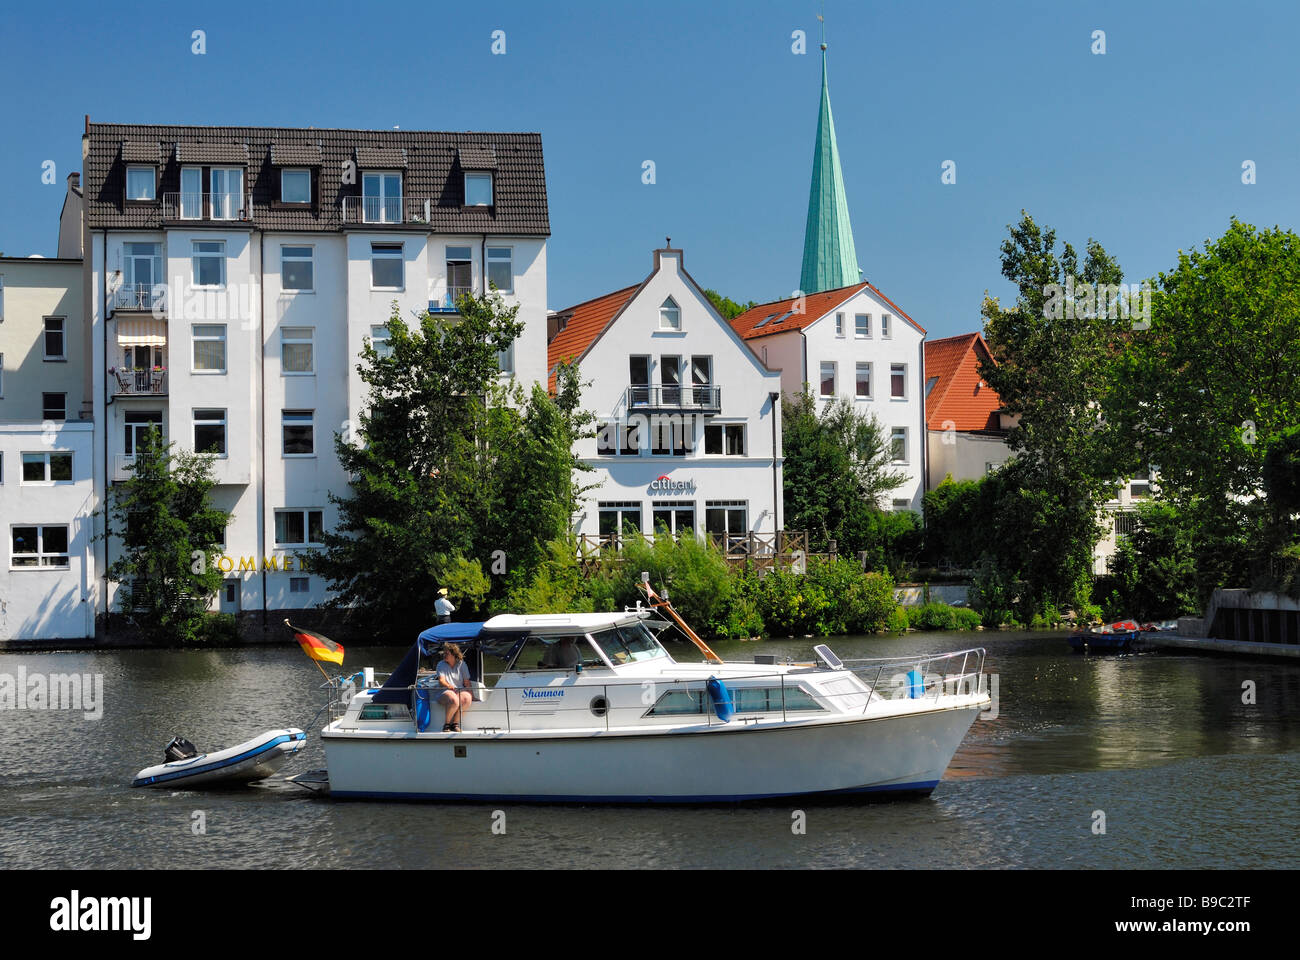 Sport Boat a Serrahn y campanarios de iglesia de San Petri y Pauli en Bergedorf, Hamburgo. Foto de stock